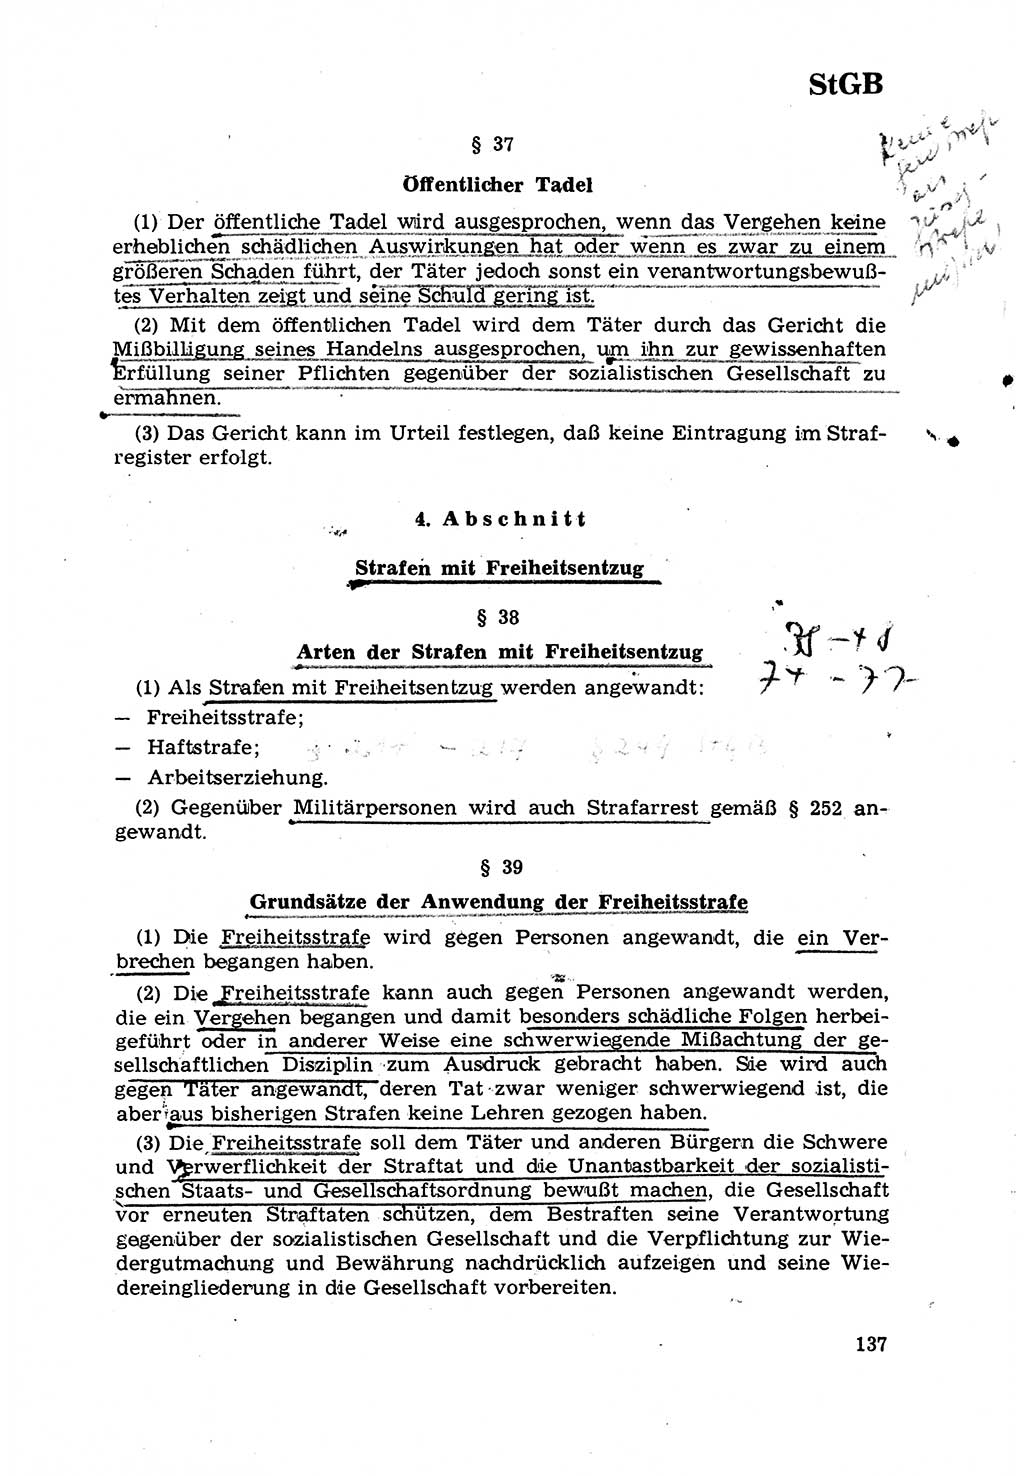 Strafrecht [Deutsche Demokratische Republik (DDR)] 1968, Seite 137 (Strafr. DDR 1968, S. 137)